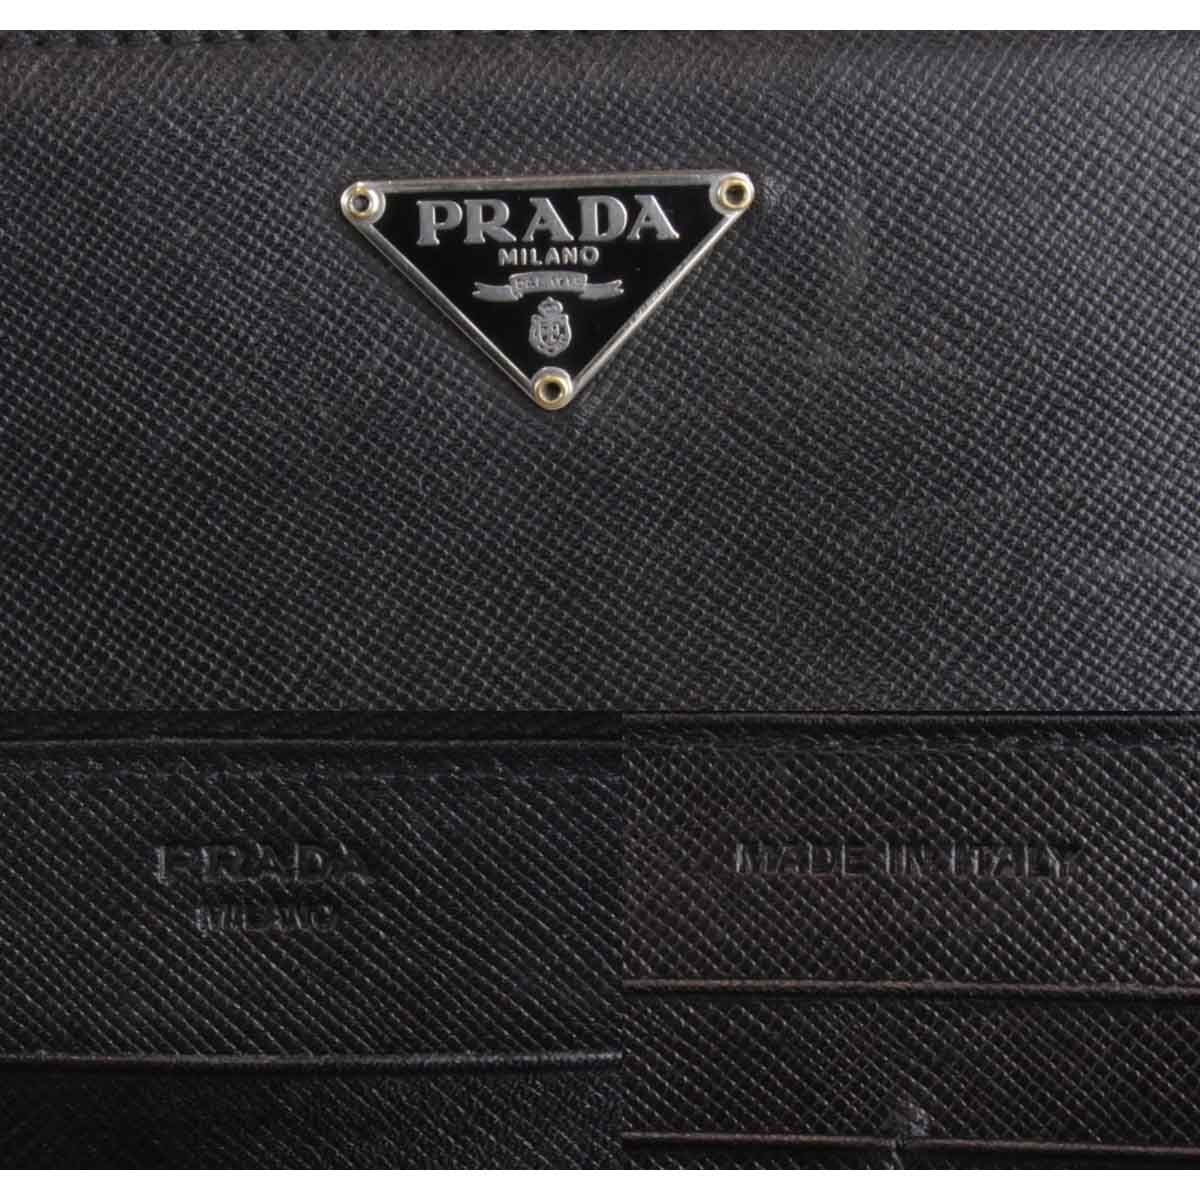 『USED』 プラダ サフィアーノ ラウンドファスナー M506A 長財布 レザー ブラック